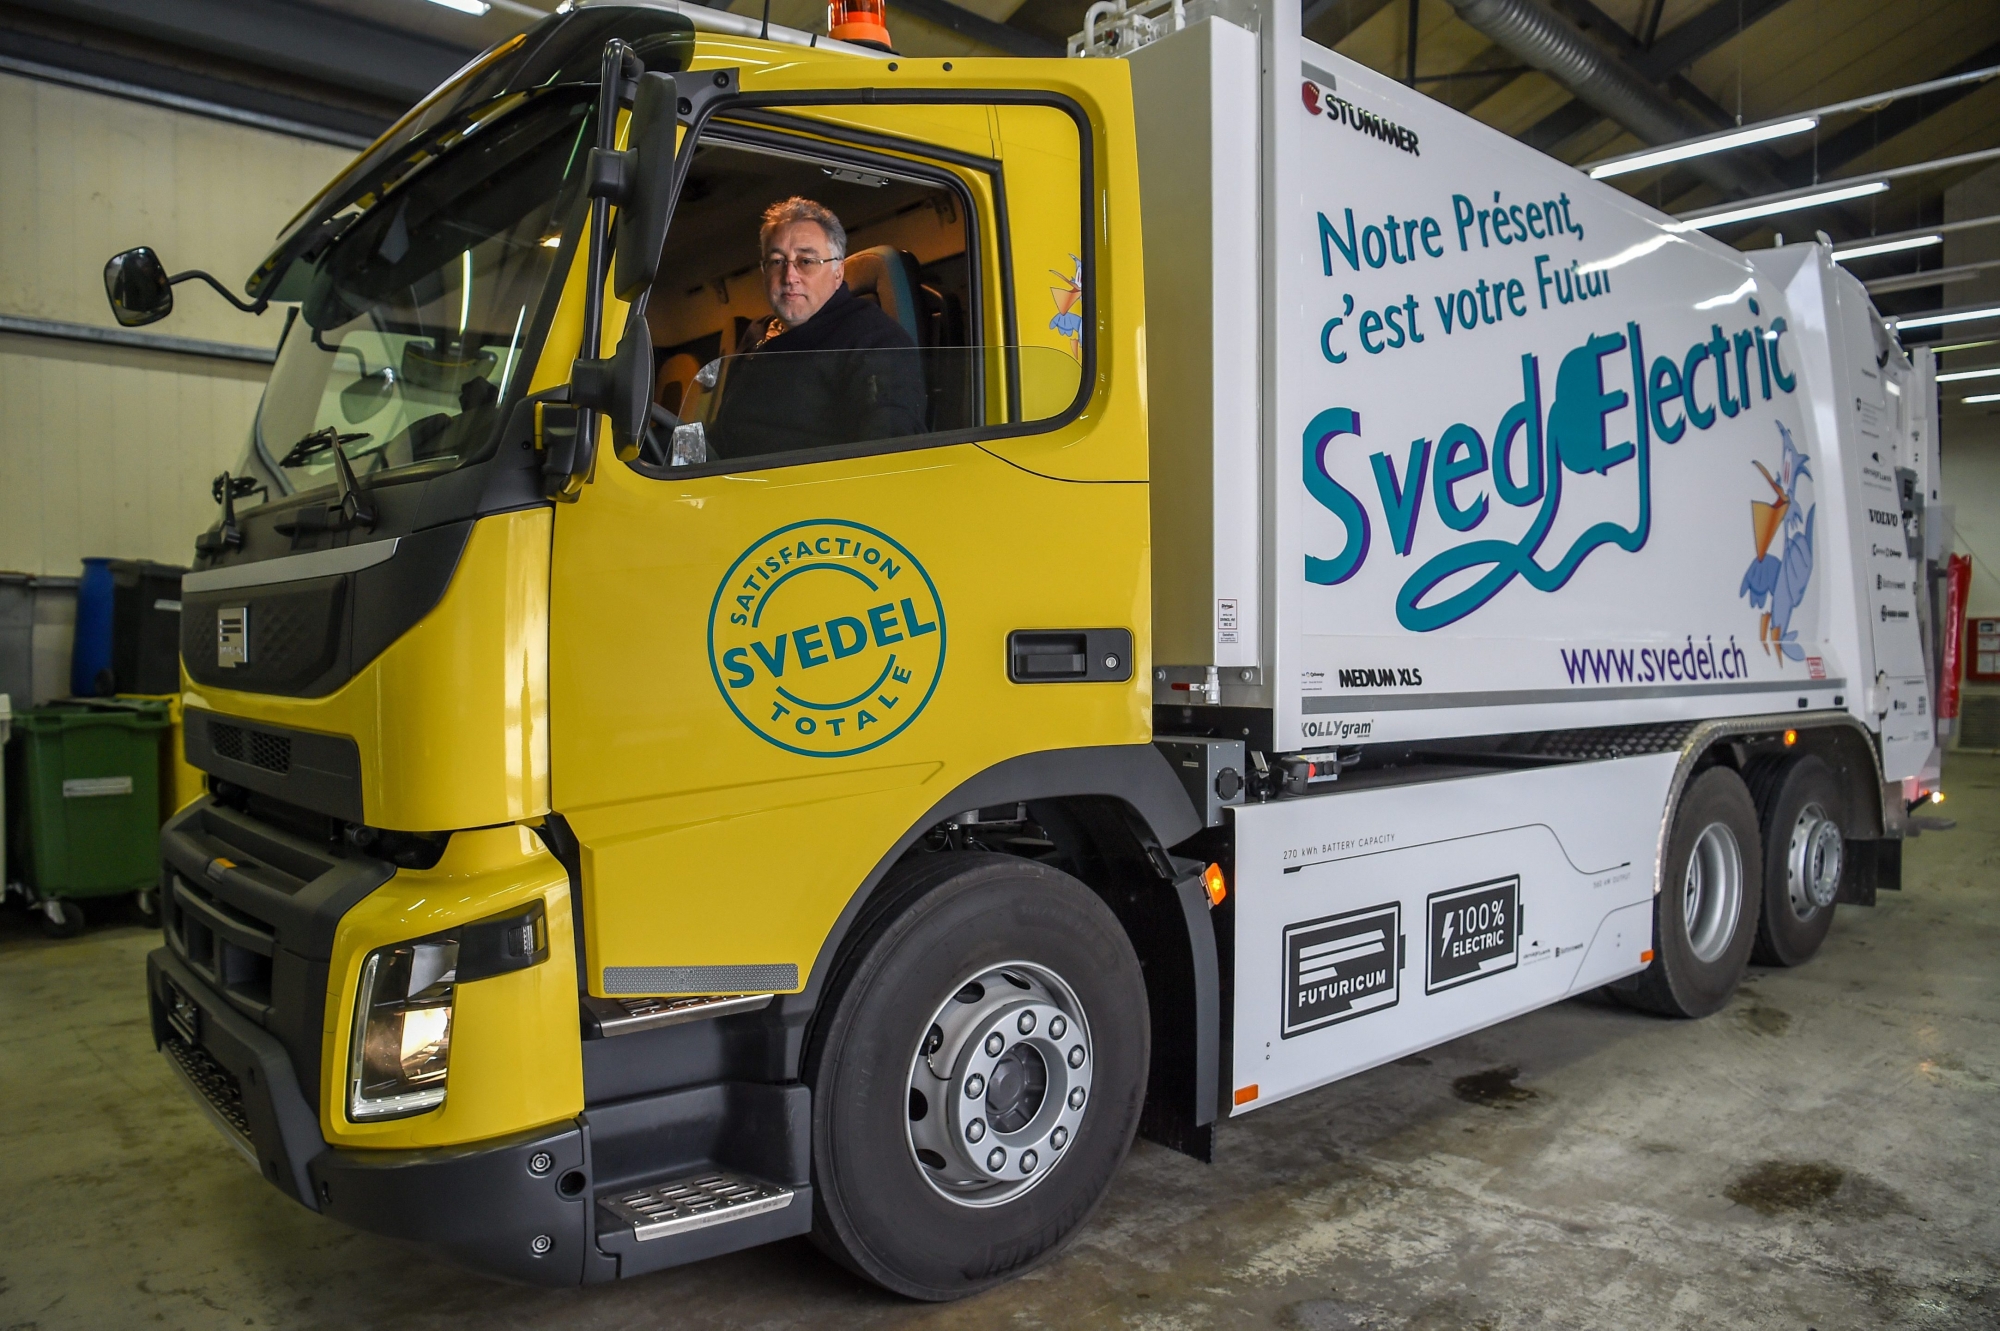 Jean-Patrick Ducommun présente son nouveau camion poubelle électrique.

NEUCHATEL 2/03/2018
Photo: Christian Galley